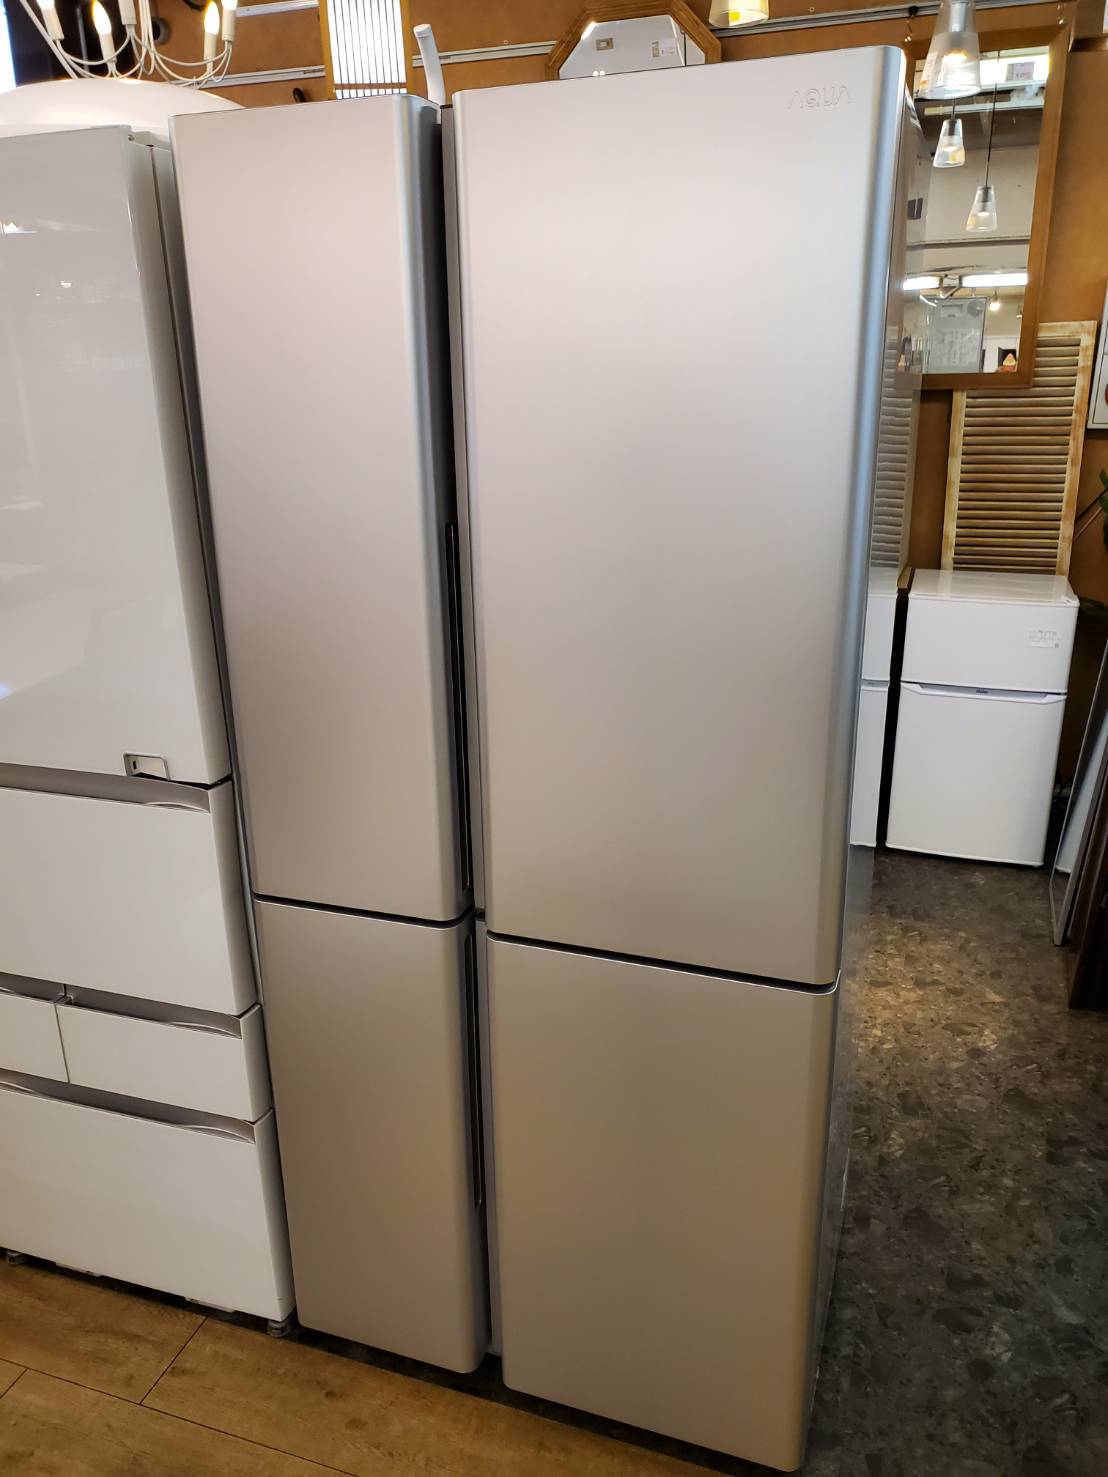 Aqua アクア 512l 4ドア冷蔵庫 年製 高年式 スタイリッシュ 大容量冷凍室 両開き 冷凍冷蔵庫 買取しました 愛知と岐阜のリサイクルショップ 再良市場